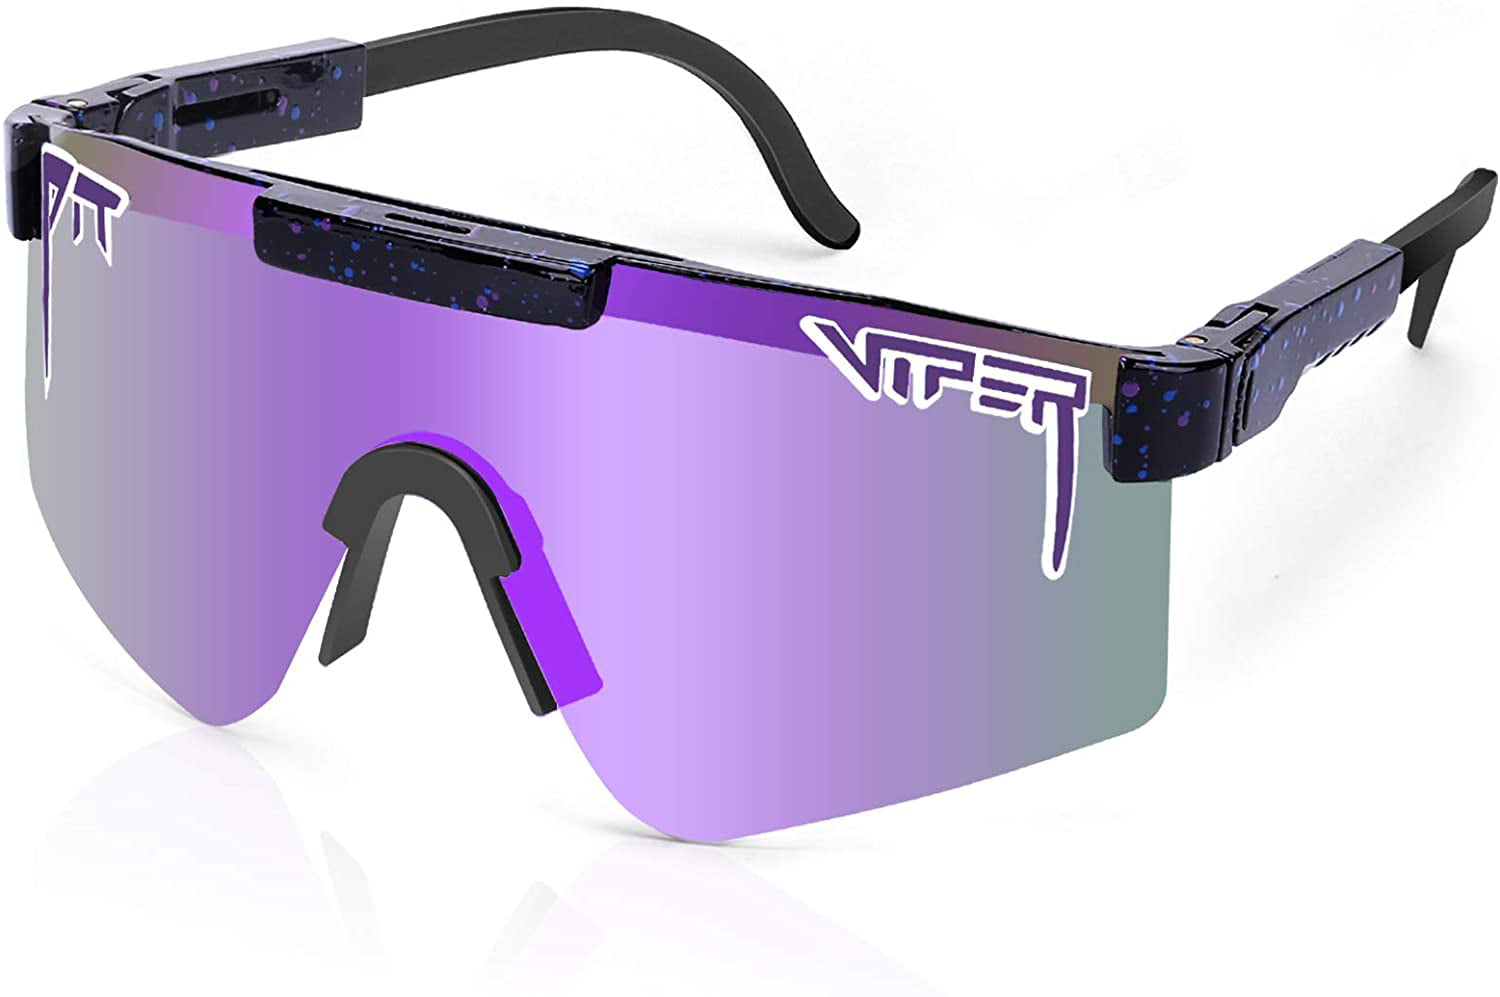 Очки пит Випер. Солнцезащитные очки Pit Viper. Pit Viper Sunglasses 1993. Pit Viper очки на людях. Uv 400 защита очки